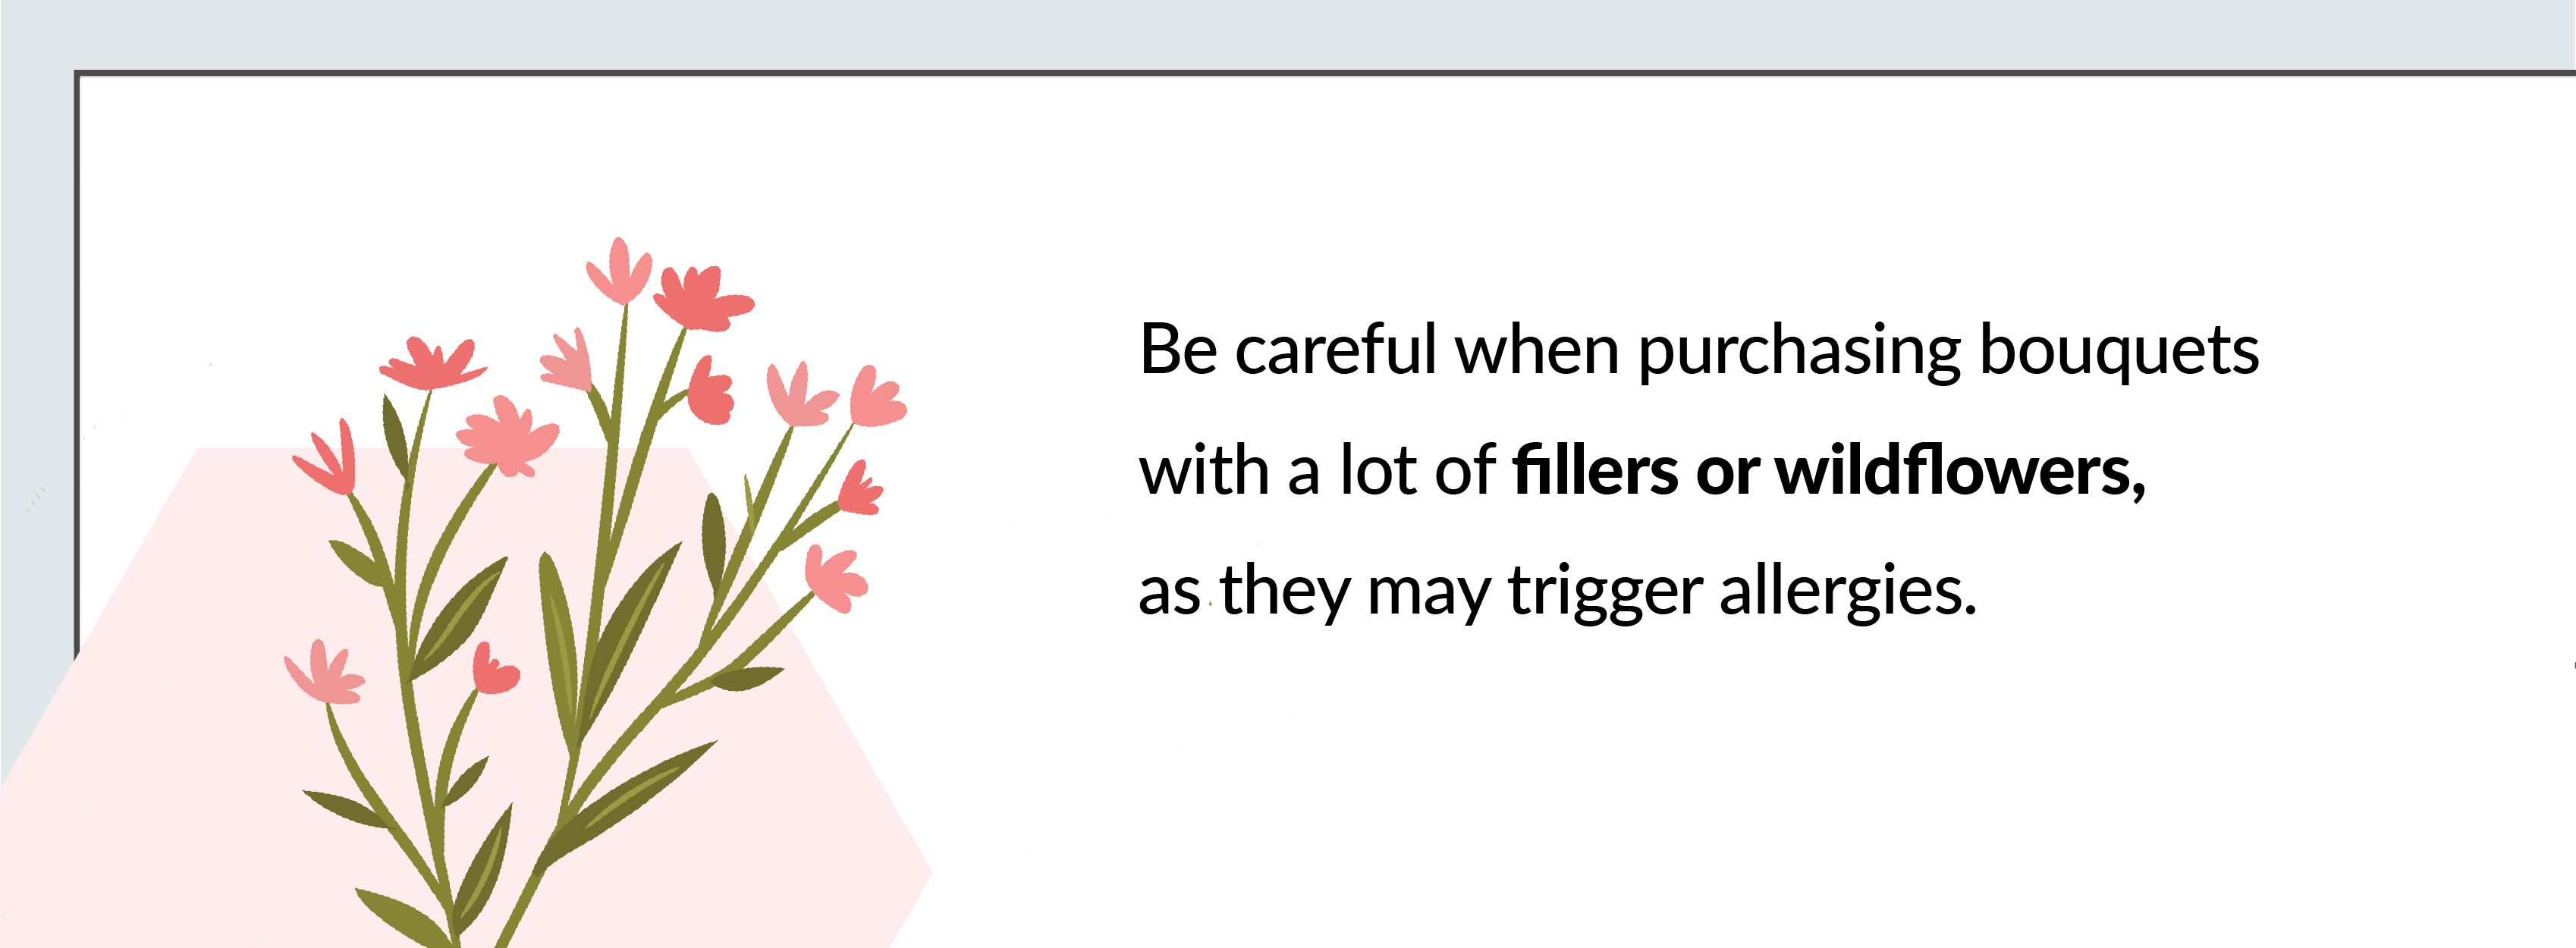 wildflowers trigger allergies